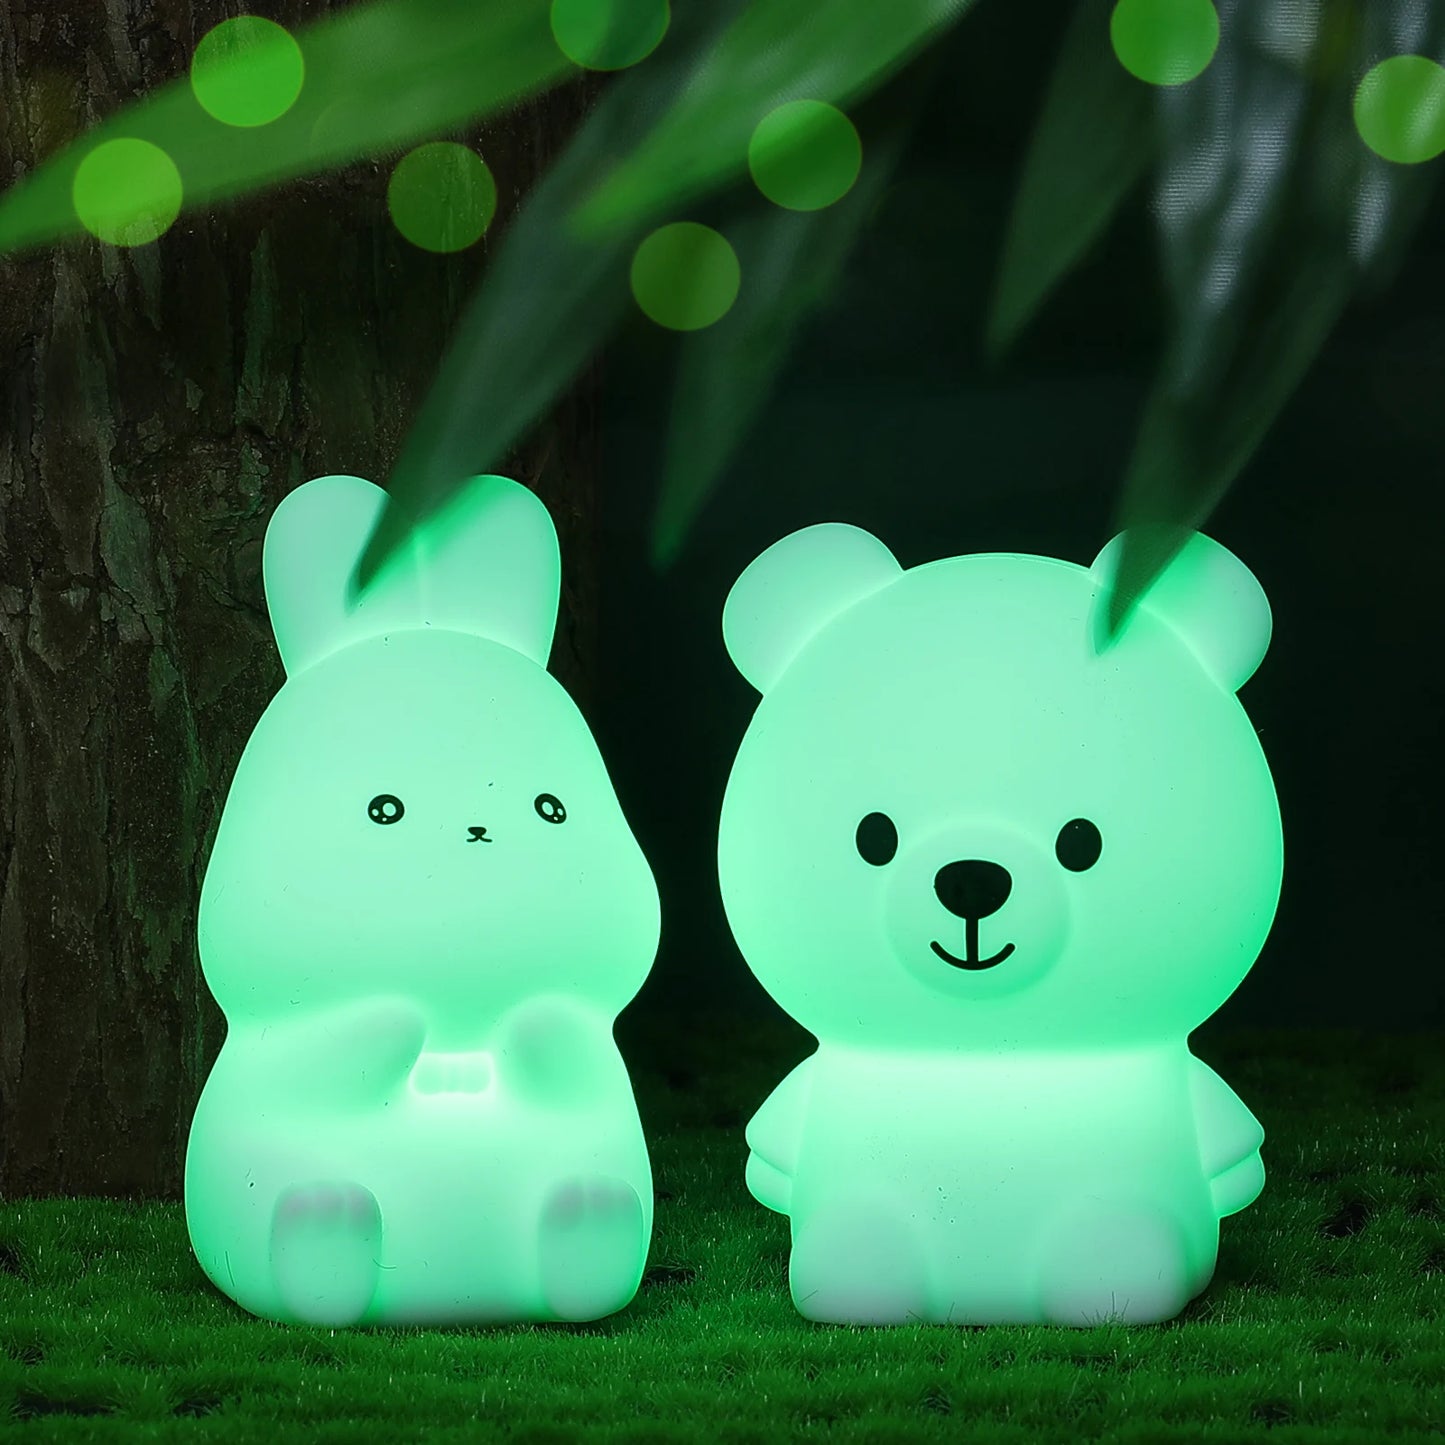 Cute Bear & Rabbit Mini Lamp